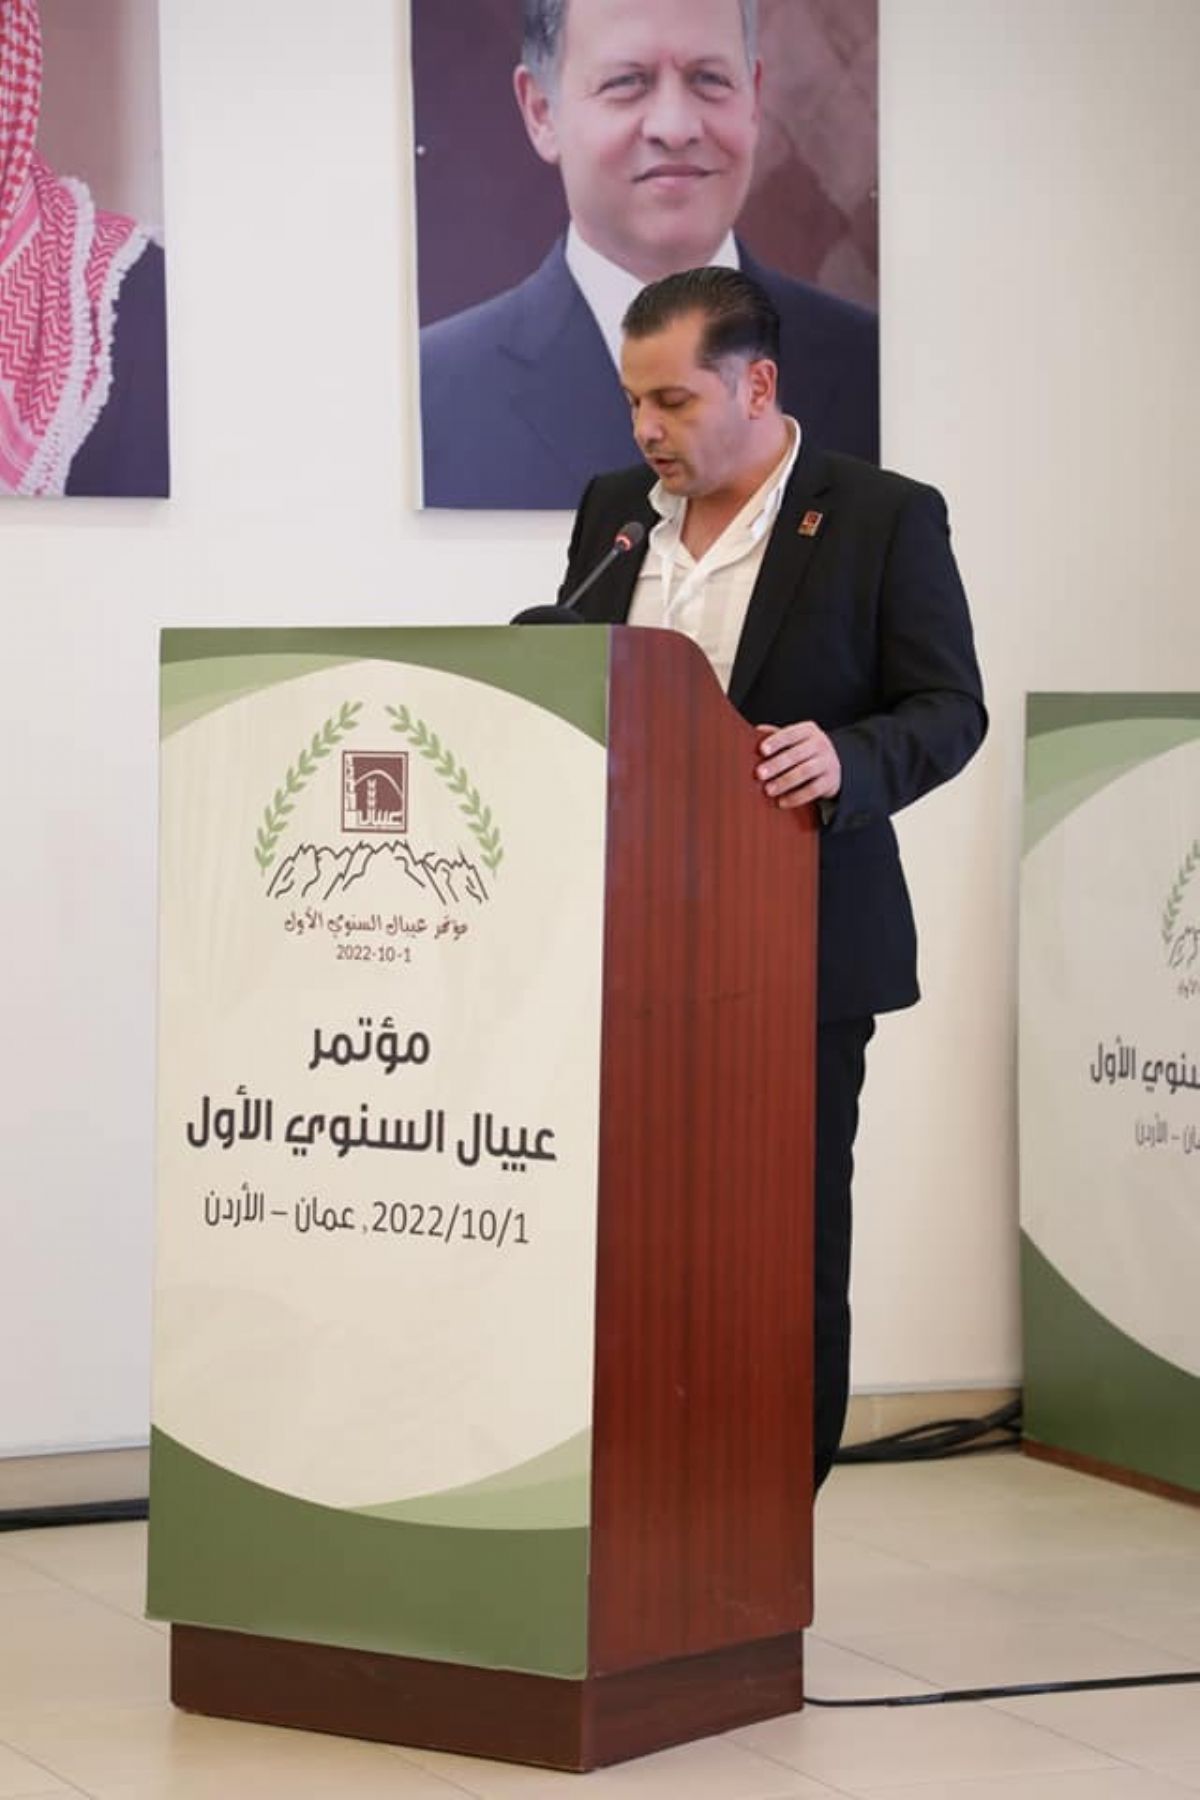 مشاركة ملتقى رجال أعمال نابلس  في المؤتمر السنوي الأول والذي نظمته جمعية عيبال الخيرية في عمان